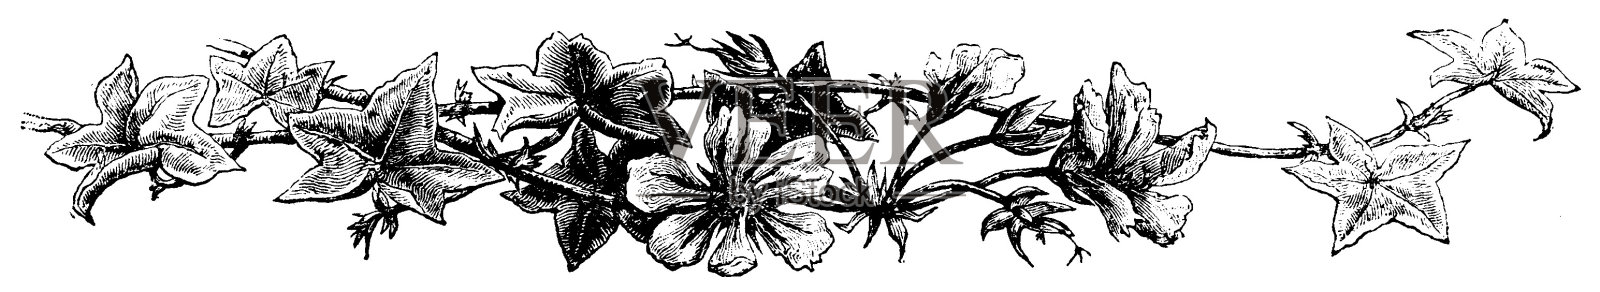 维多利亚黑白页装饰插图叶和花在一条线;男孩自己的报纸1892年插画图片素材